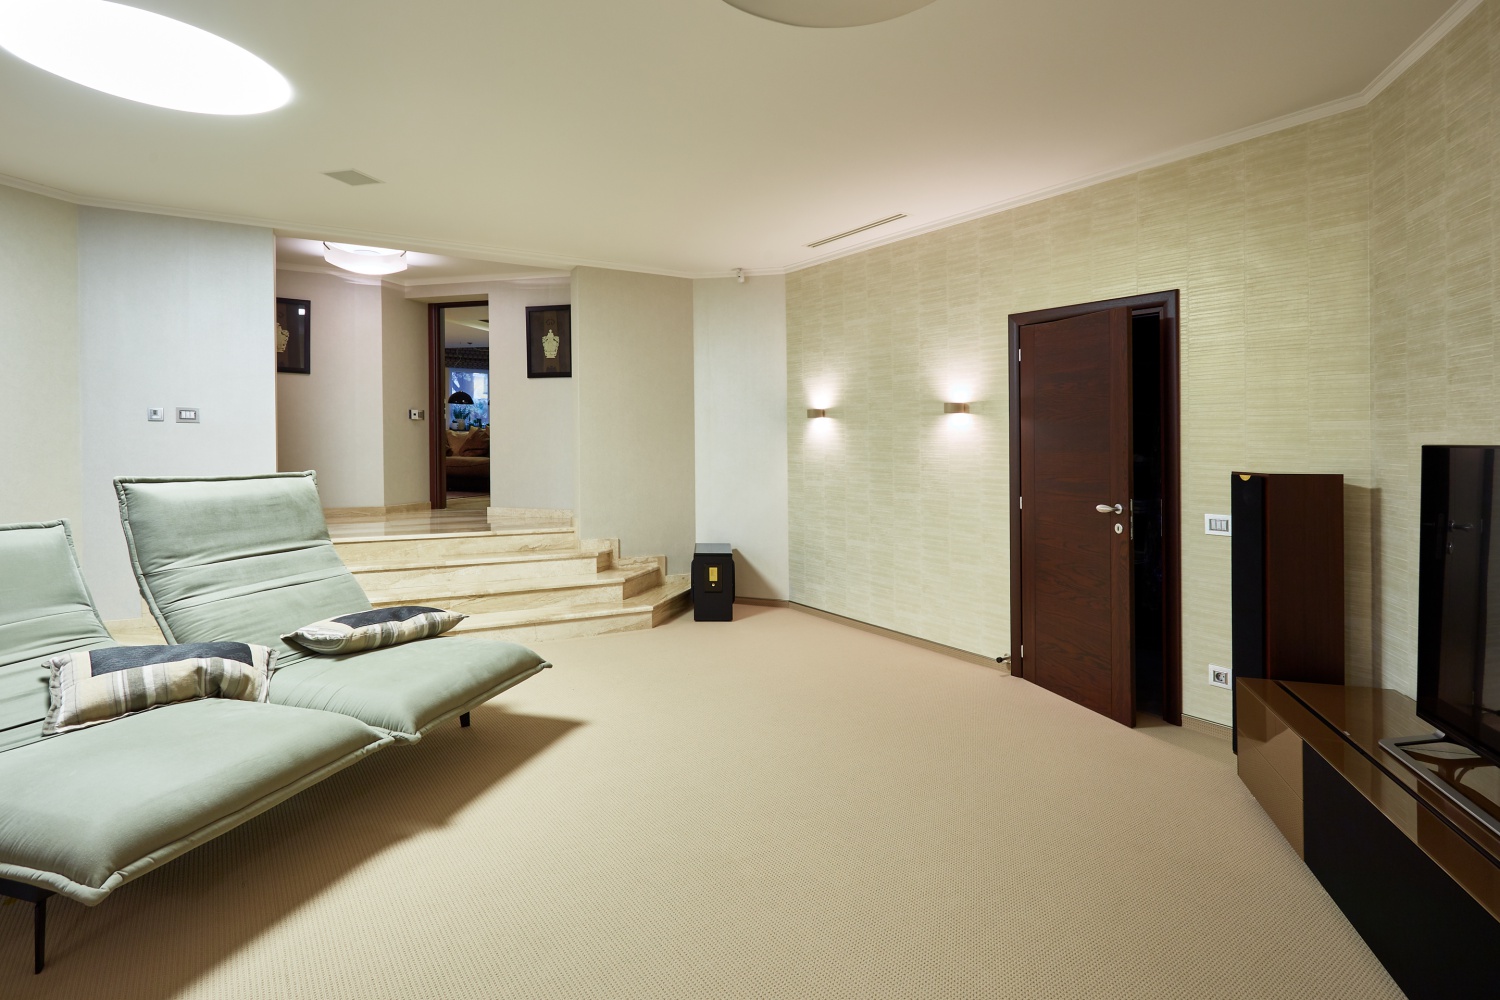 Rīgas stilīgākie dzīvokļi, kur pavadīt mājsēdi būtu tīrā bauda - Nekustamo īpašumu ziņas - City24.lv nekustamo īpašumu sludinājumu portāls